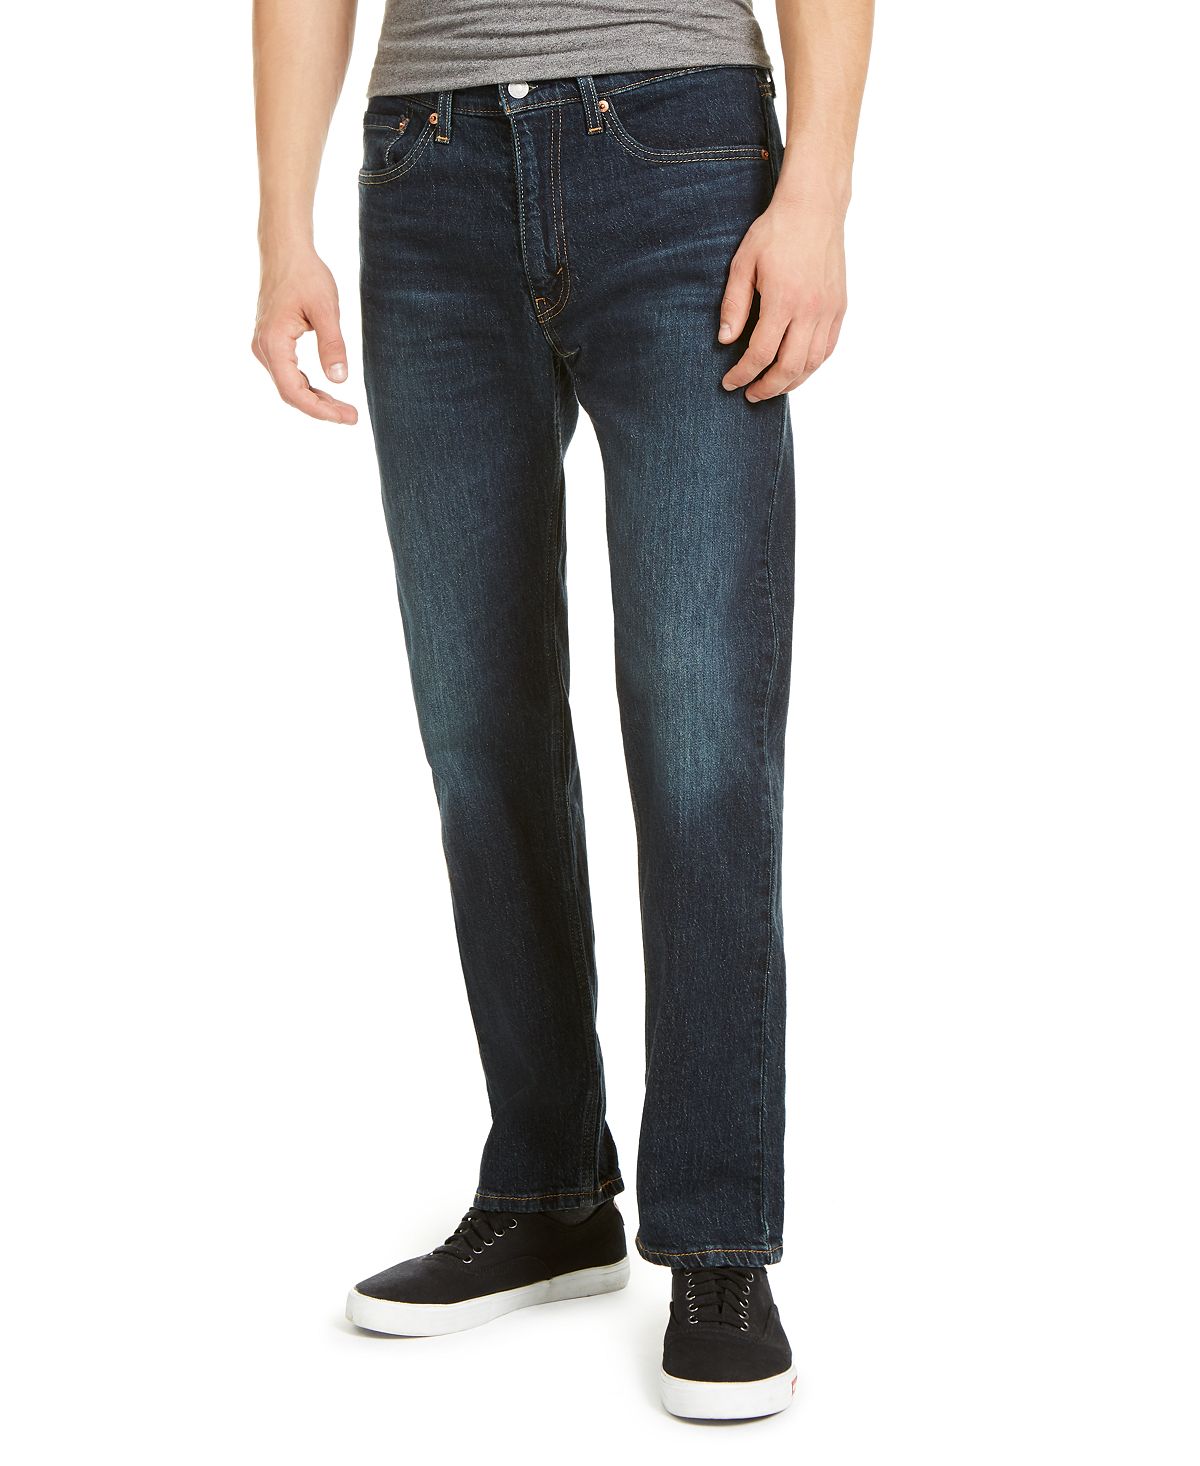 джинсы levi s 505 regular fit jean цвет roadie Мужские эластичные джинсы прямого кроя 505 стандартного кроя Levi's, мульти